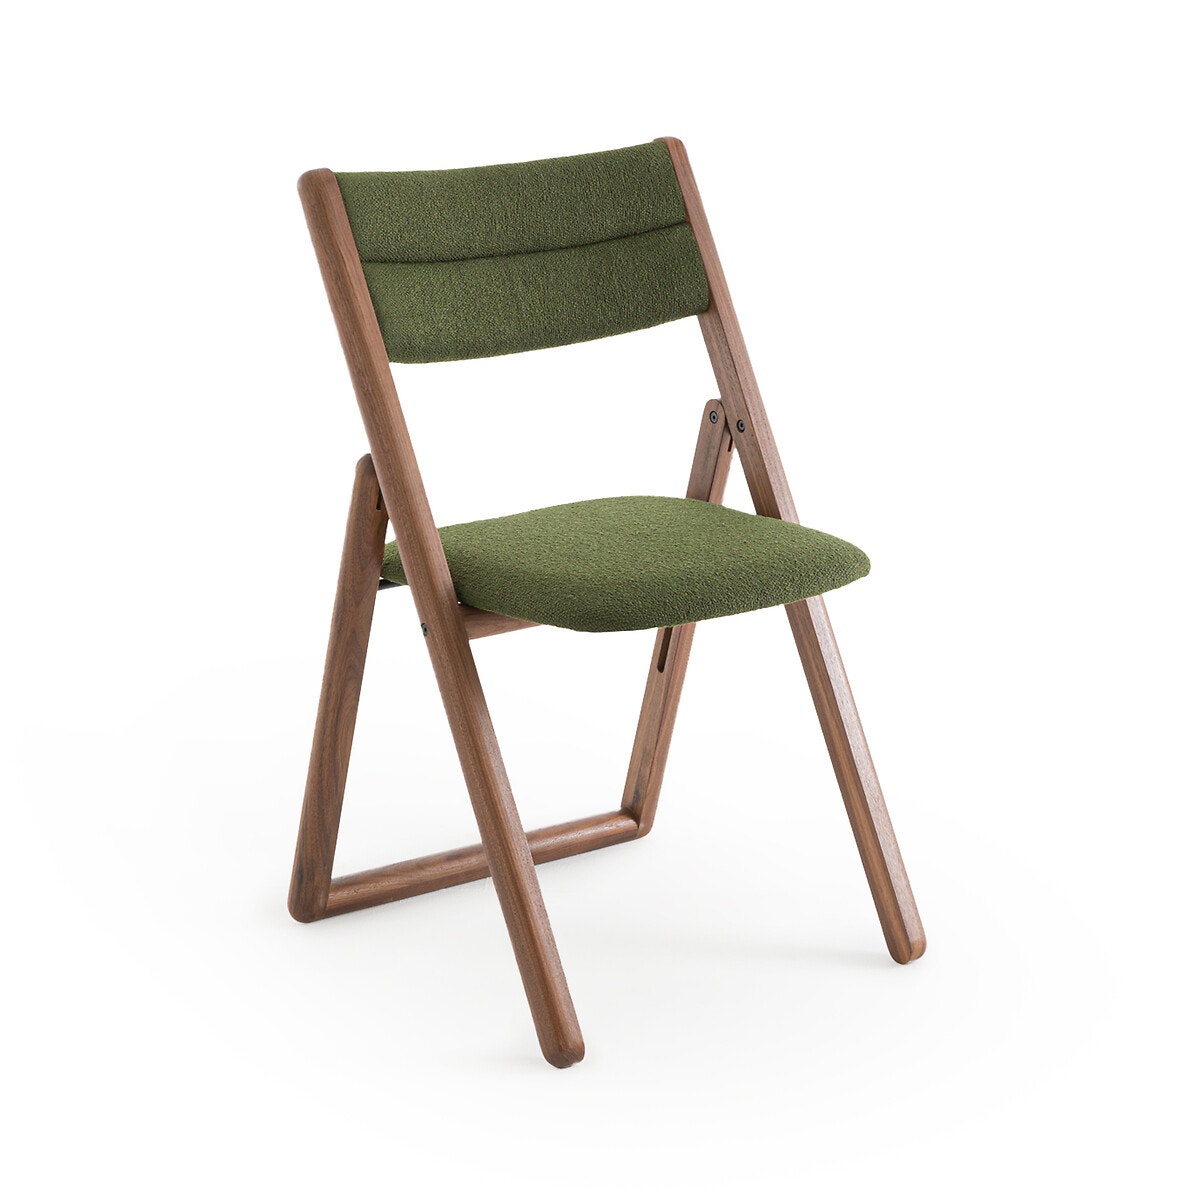 Πτυσσόμενη καρέκλα από ξύλο καρυδιάς Μ50xΠ50xΥ83cm